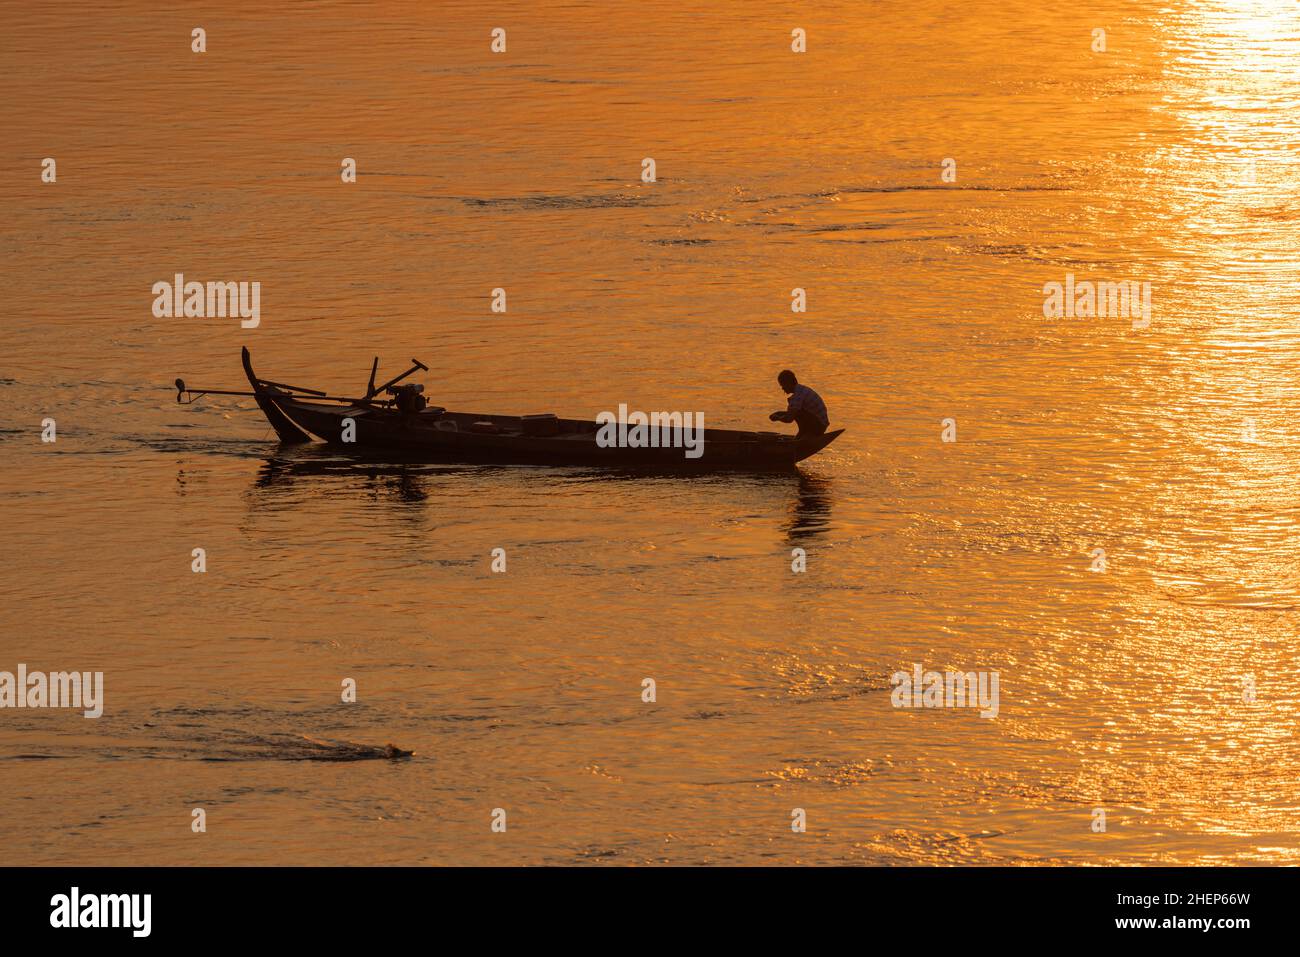 Pescatore sulla barca tradizionale sul fiume Mekong in Cambogia durante il tramonto Foto Stock